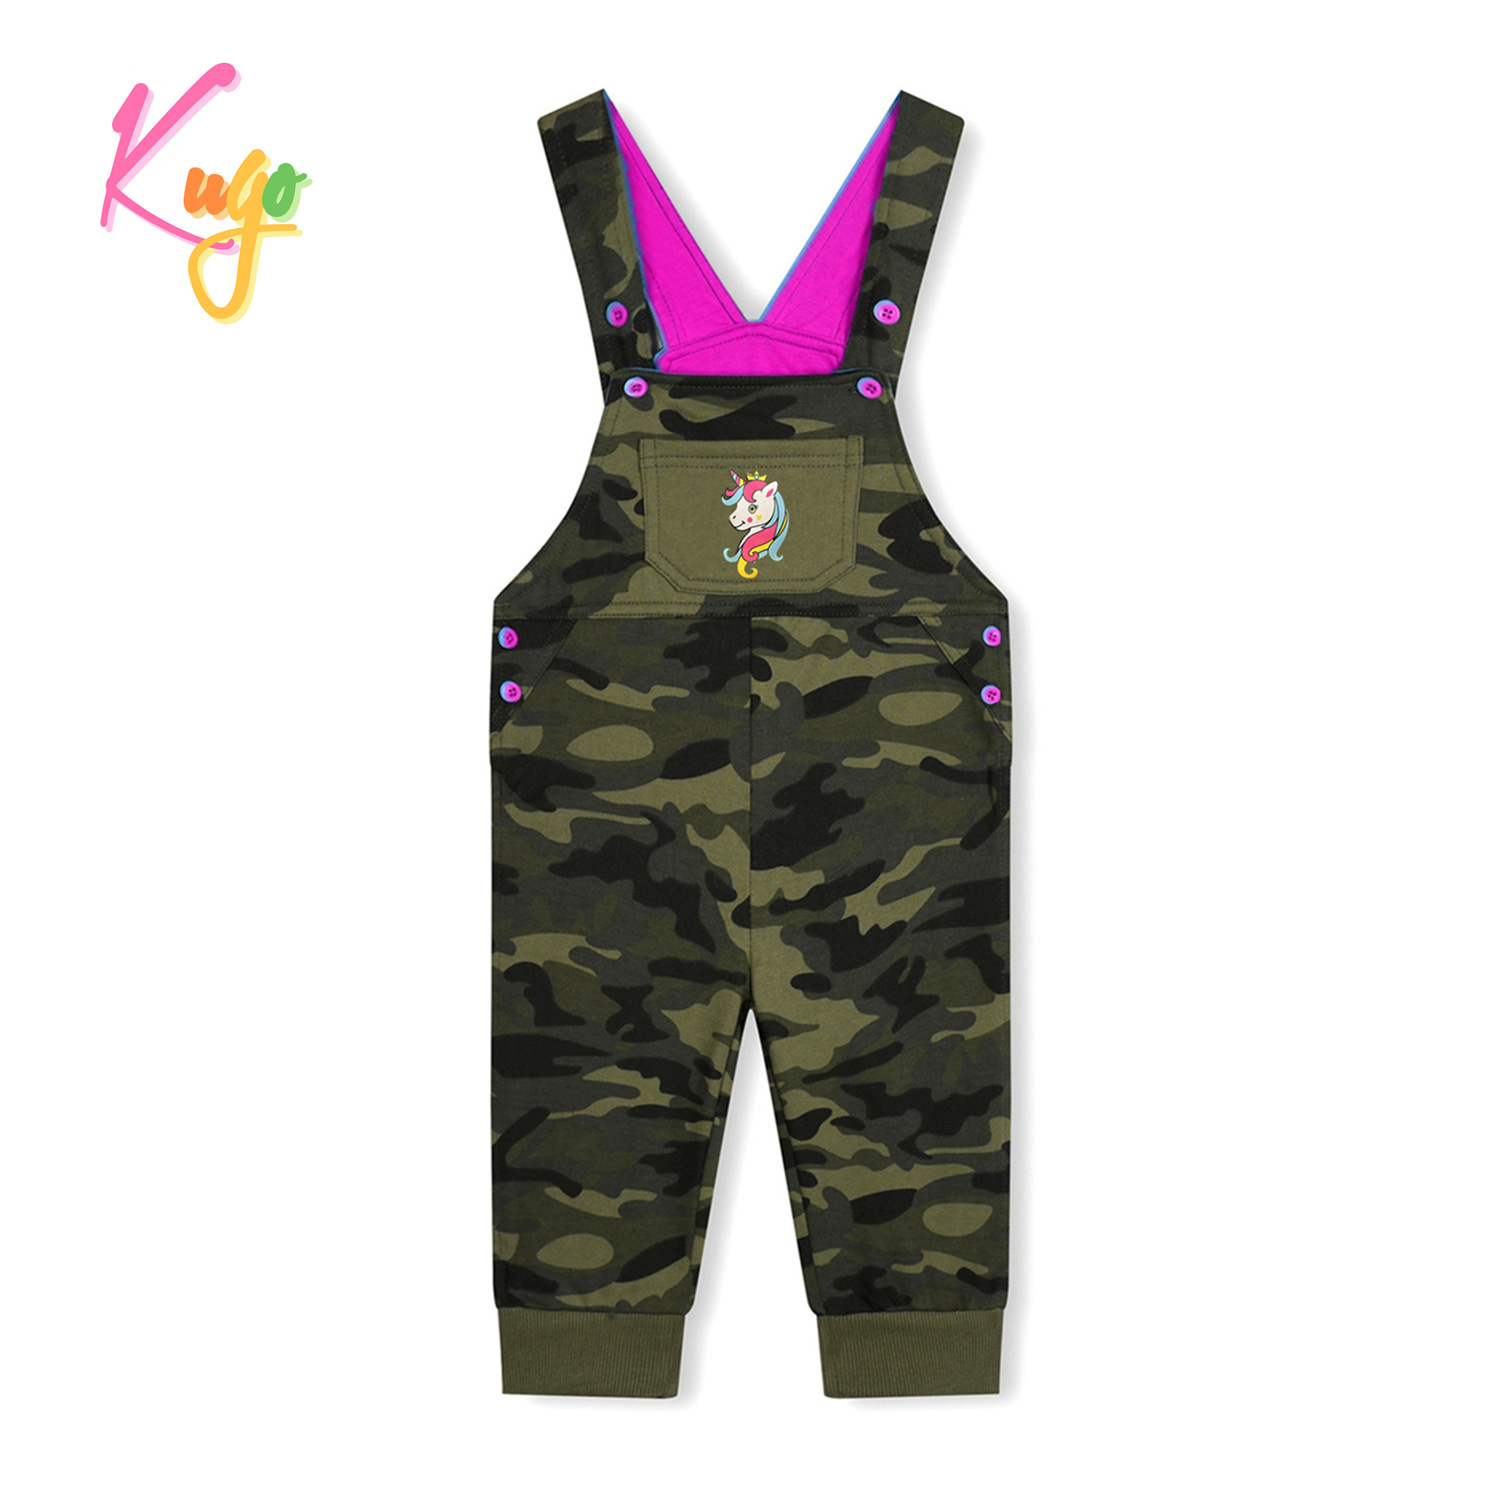 Dětské laclové tepláky - KUGO ST7733, maskáč/ růžová aplikace Barva: Khaki, Velikost: 80